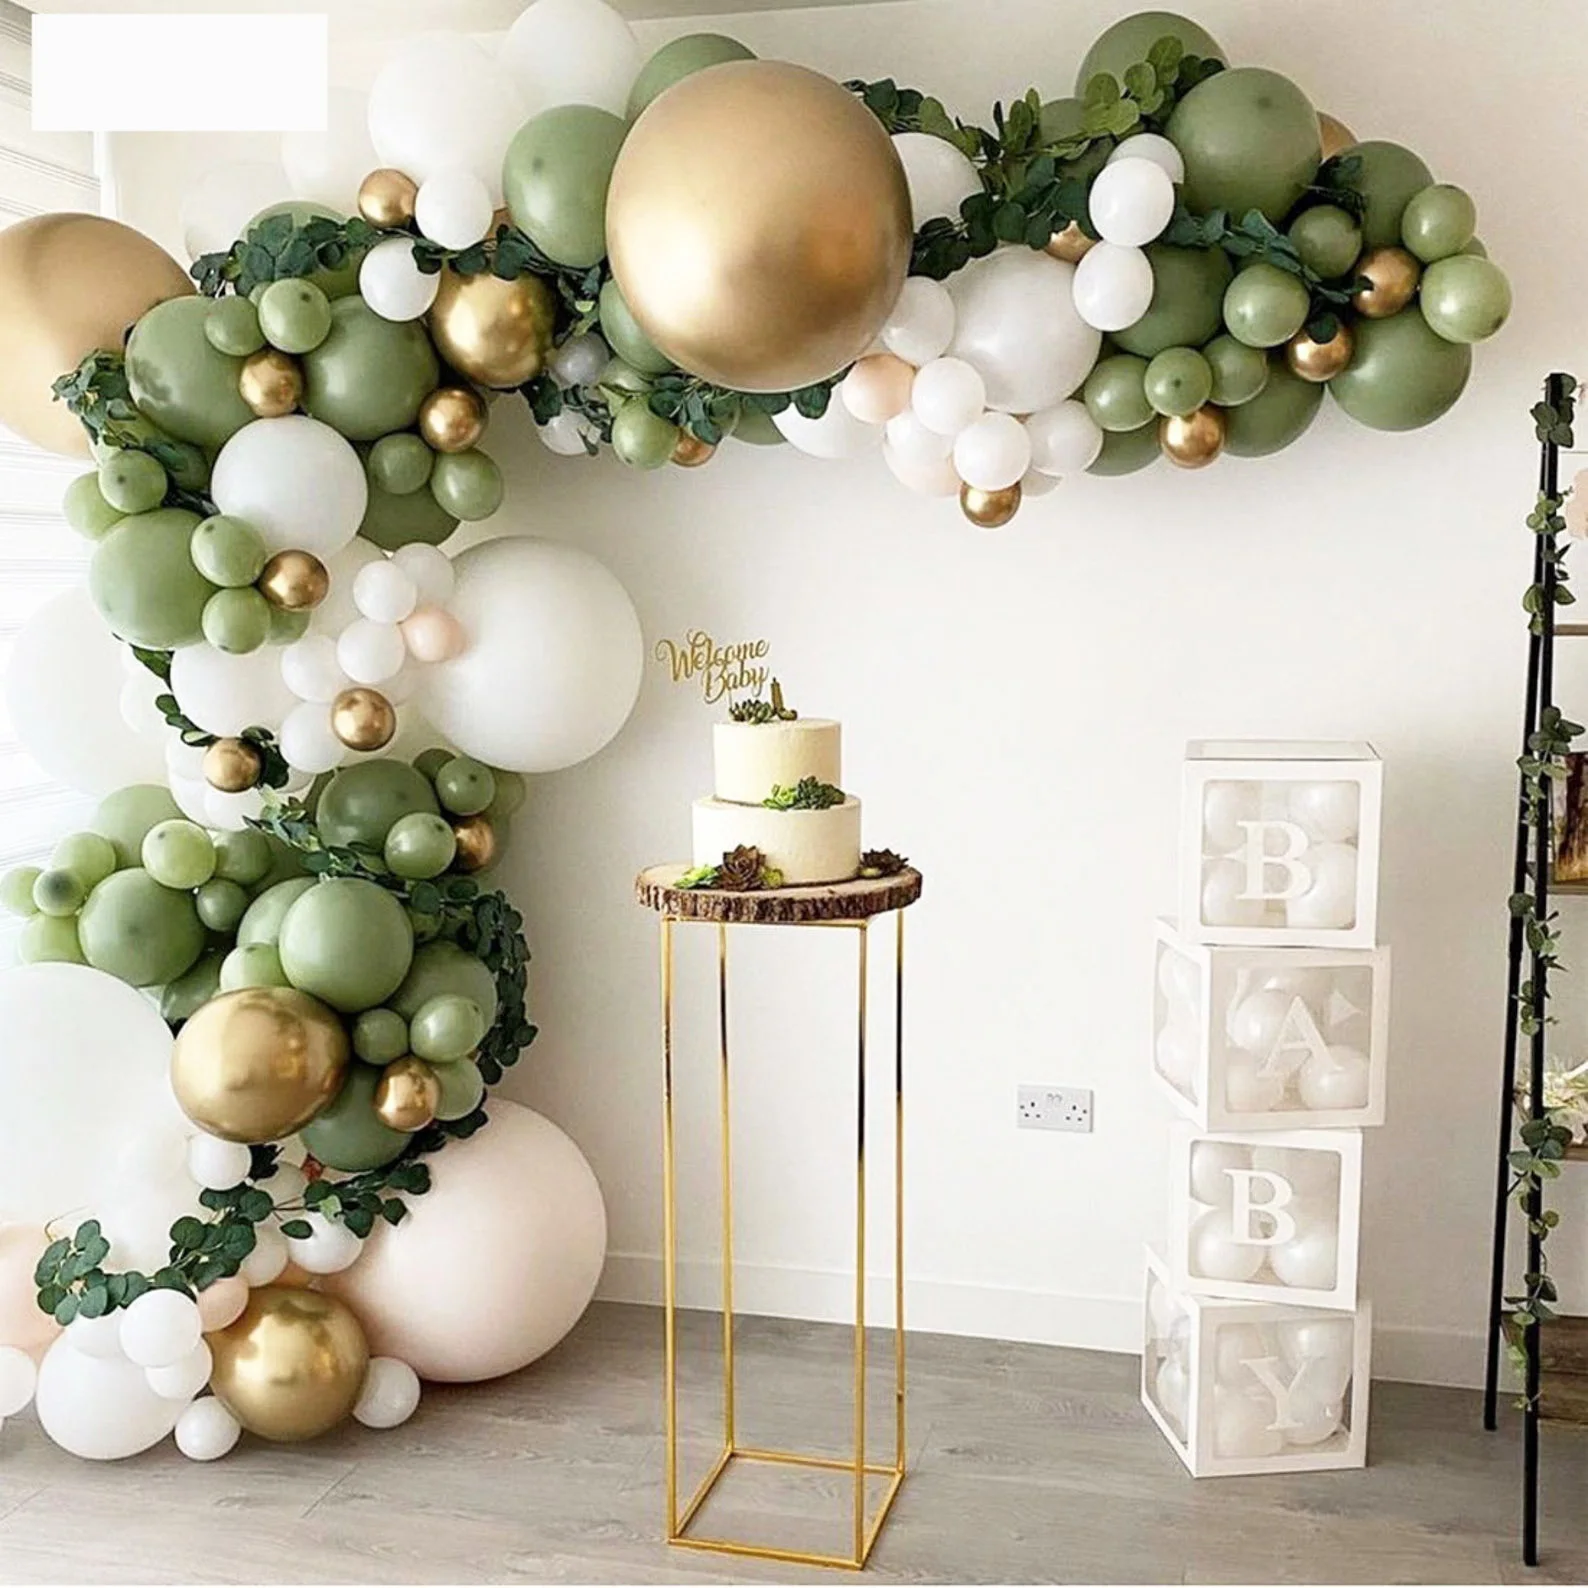 

152 шт. зеленые воздушные шары, гирлянда, зеленые золотые шары в стиле ретро, украшение для свадьбы, джунгли, сафари, дня рождения, вечеринки, ...